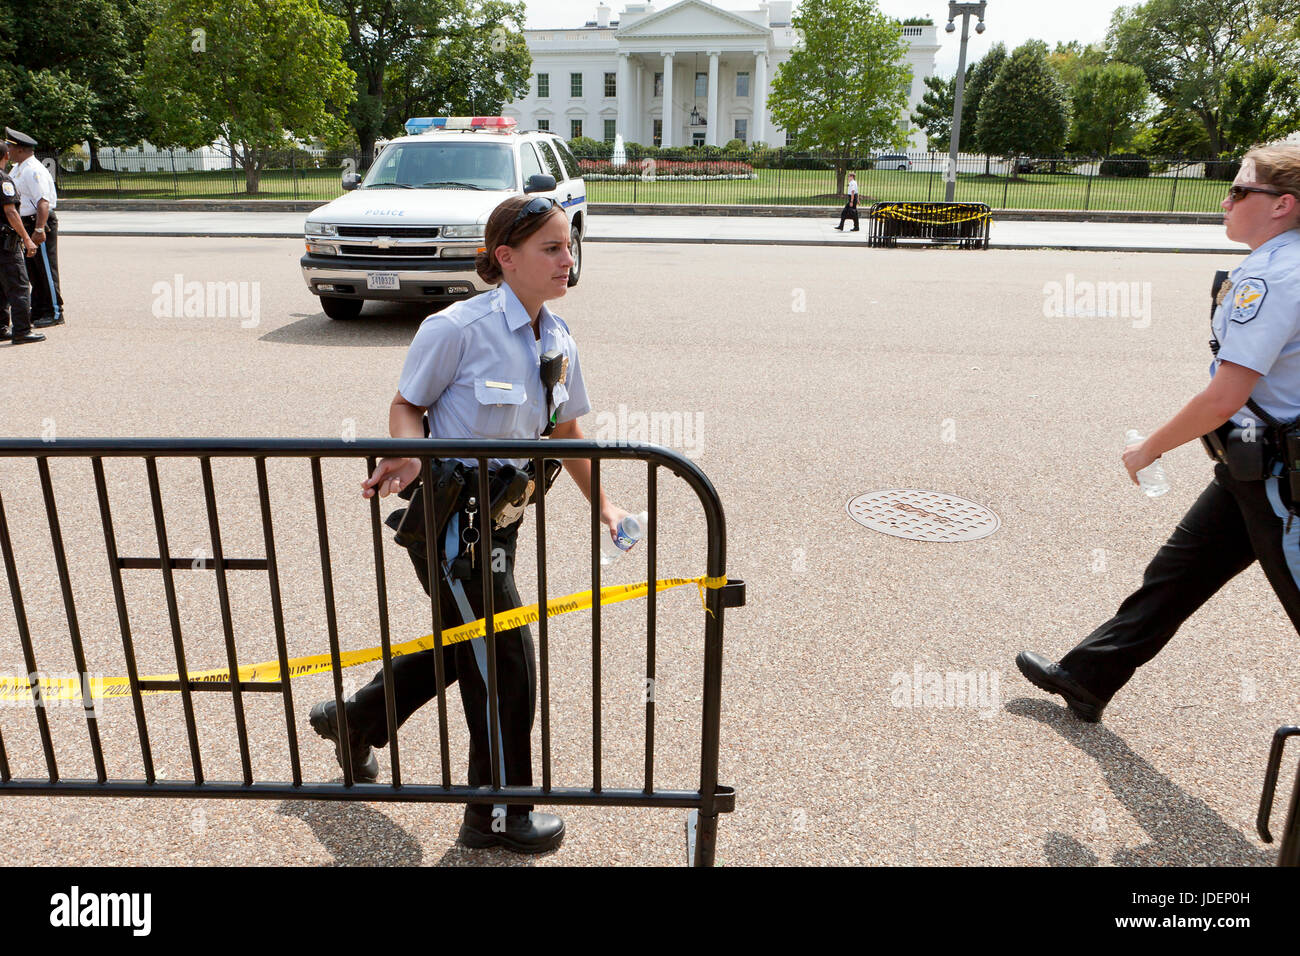 Poliziotta in movimento recinzione di polizia (barricade recinto) nella preparazione di una protesta pubblica davanti alla Casa Bianca - Washington DC, Stati Uniti d'America Foto Stock